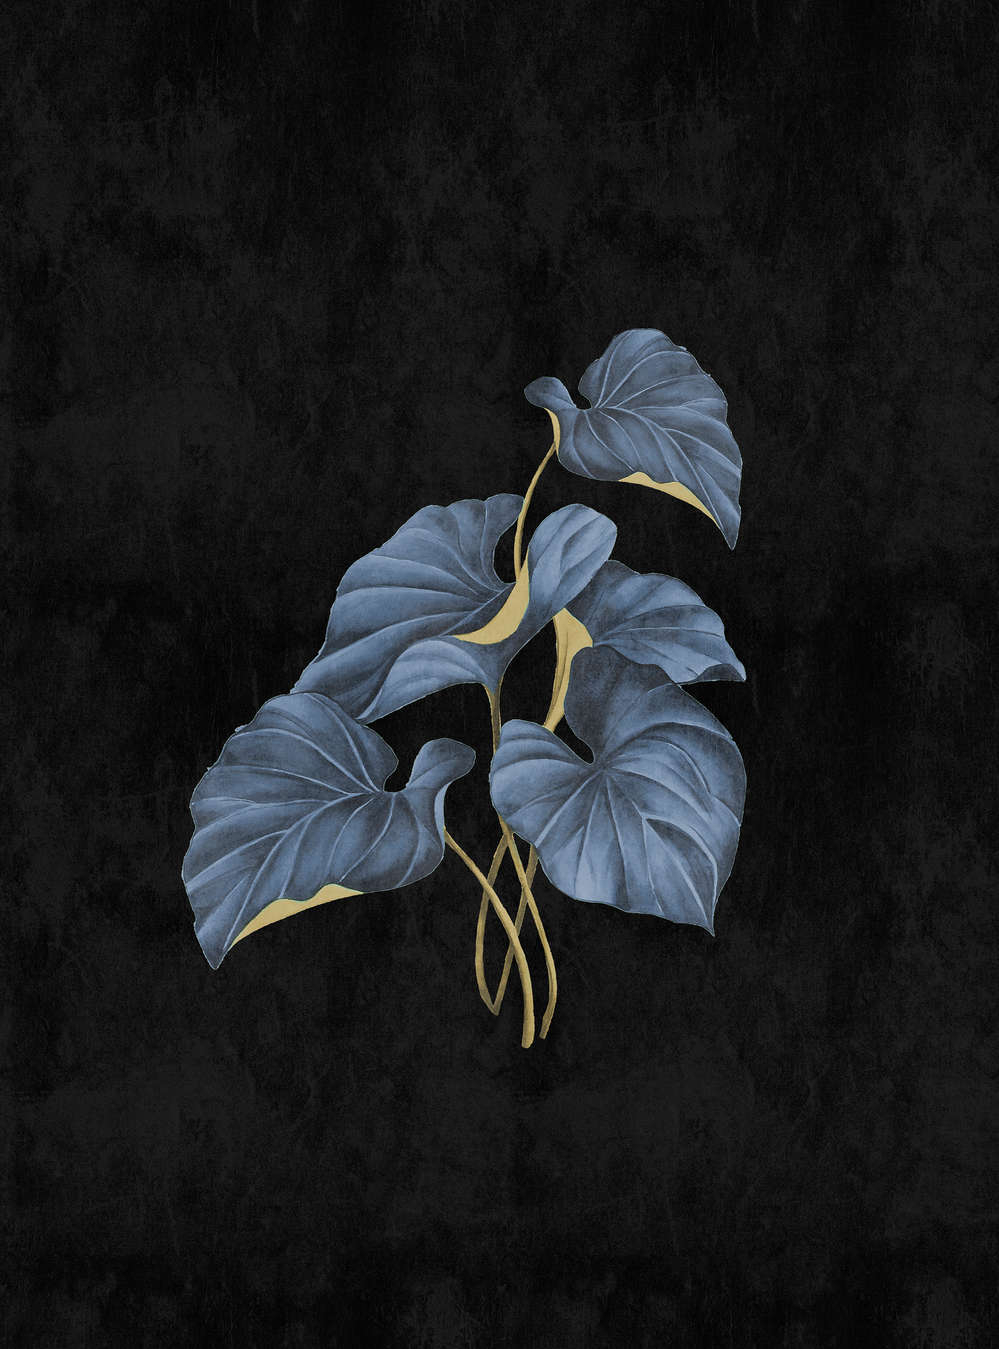             Fiji 1 – Schwarze Fototapete Blaue Blätter mit Gold Akzent
        